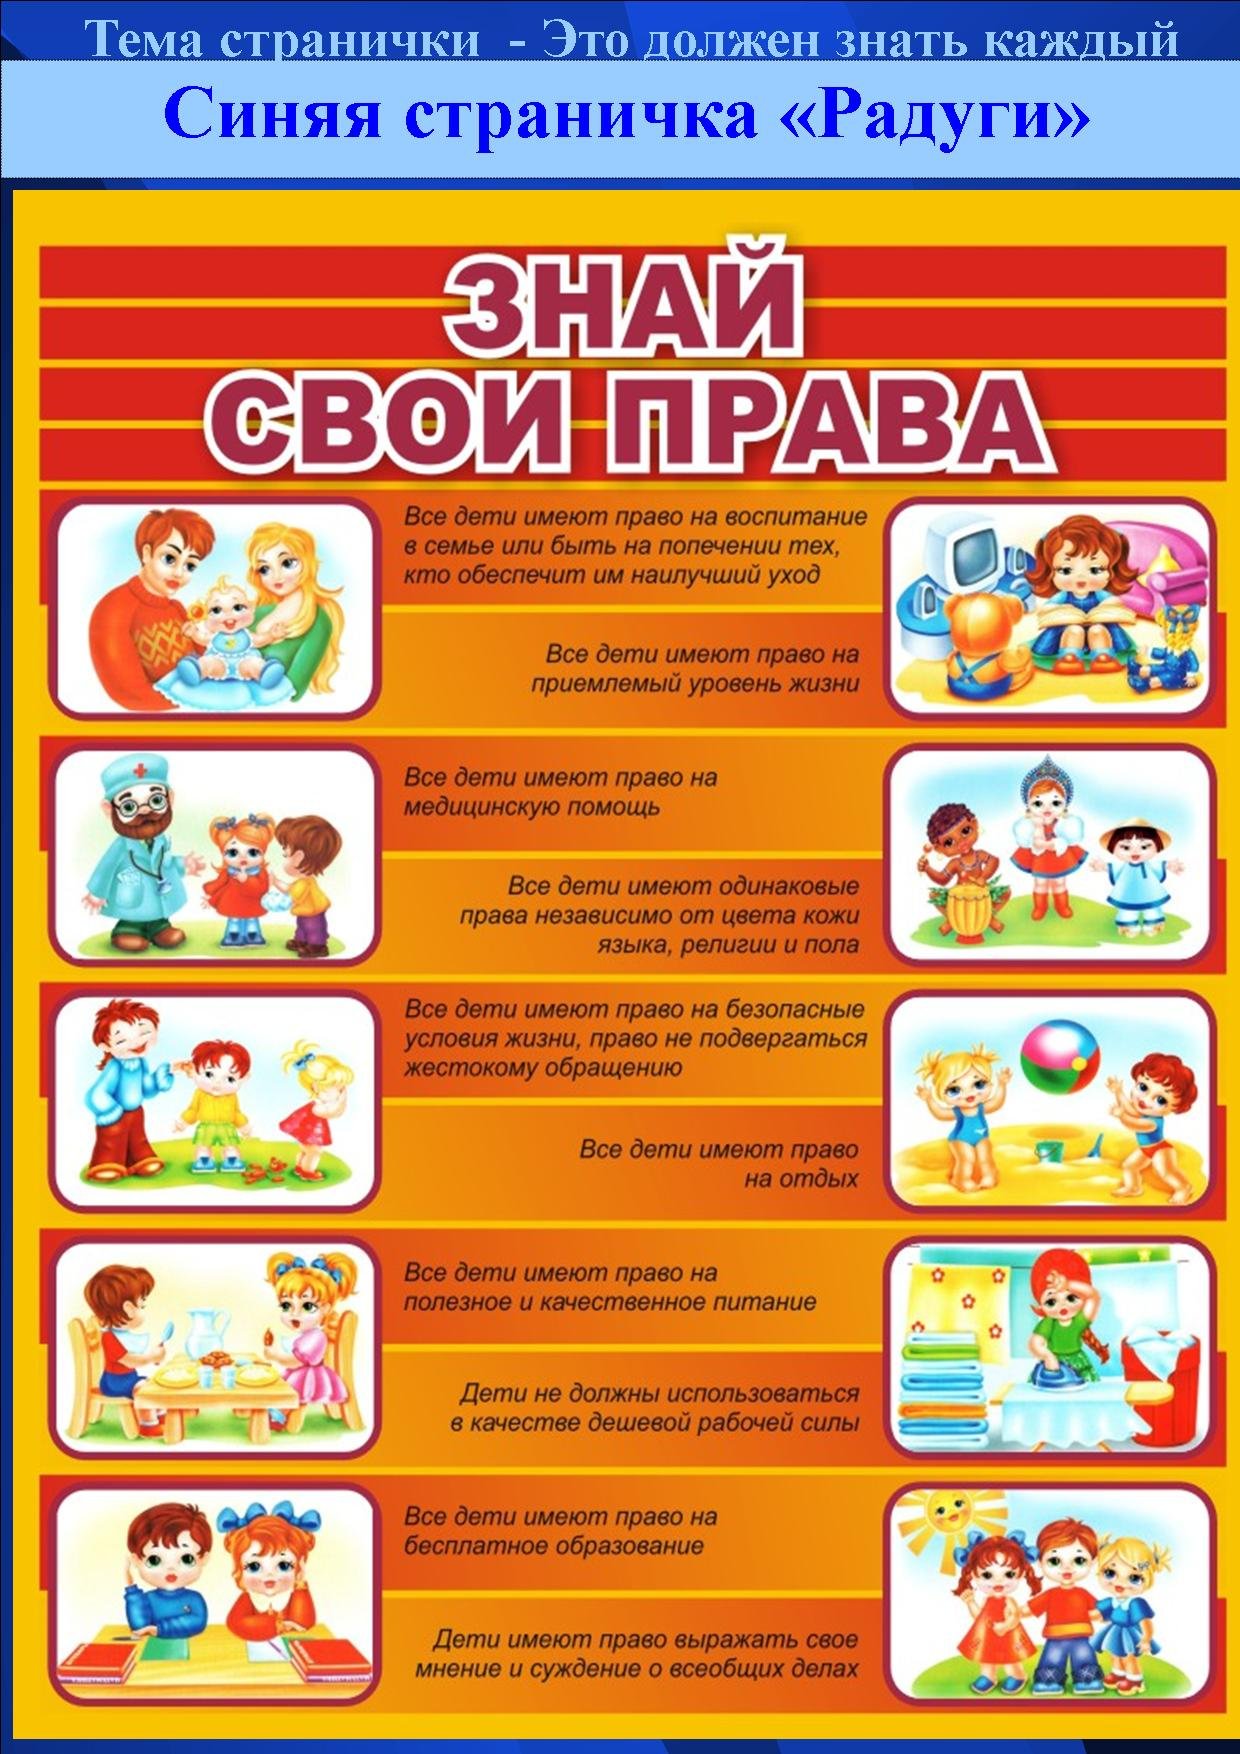 Обязанности ребенка в детском саду